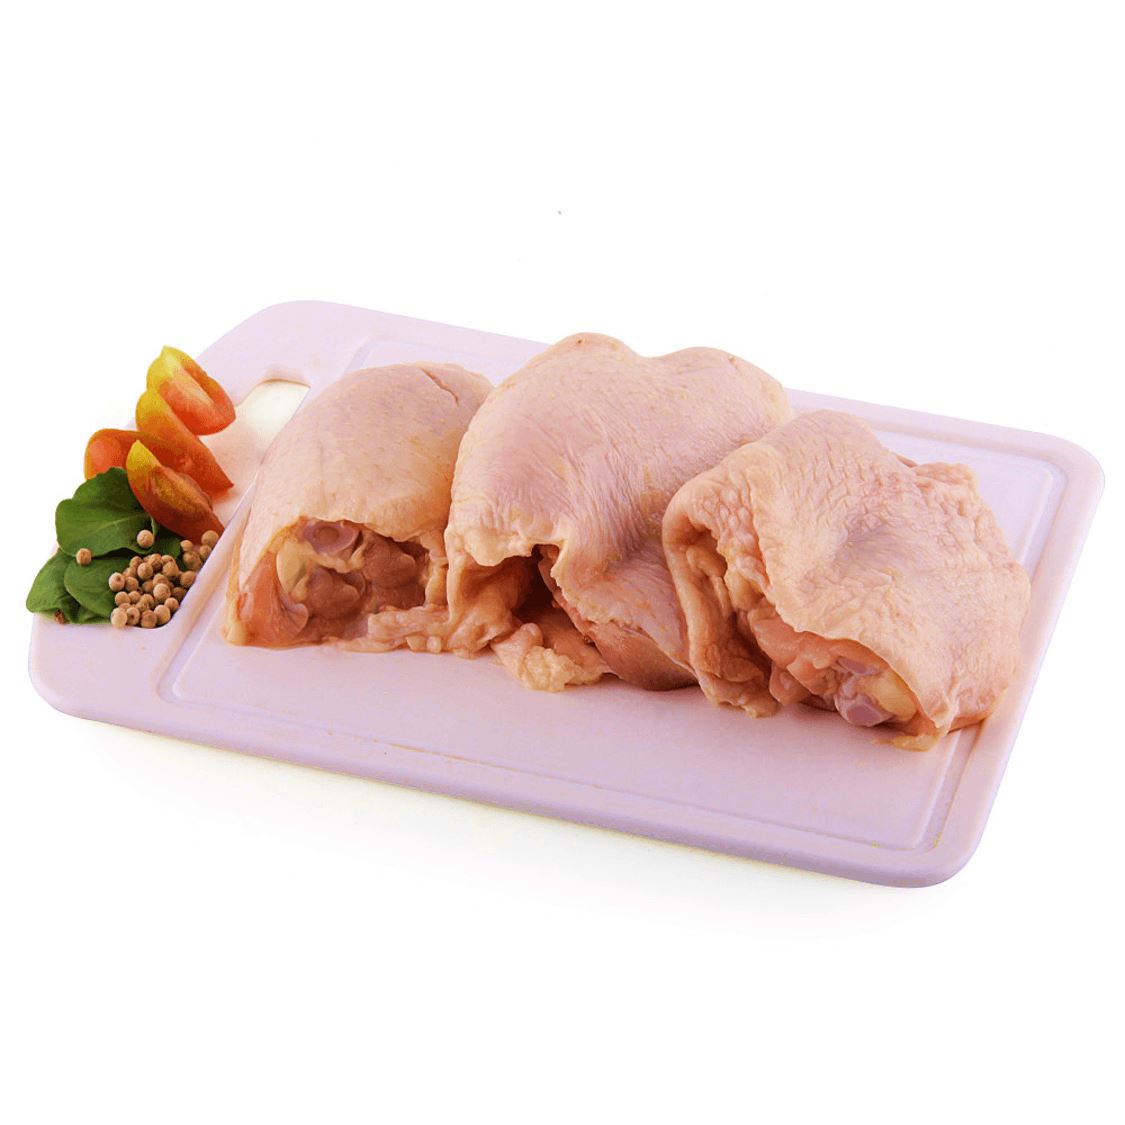 Trutros de pollo enteros deshuesados | 3 unidades | PRECIO CLUB $4.145